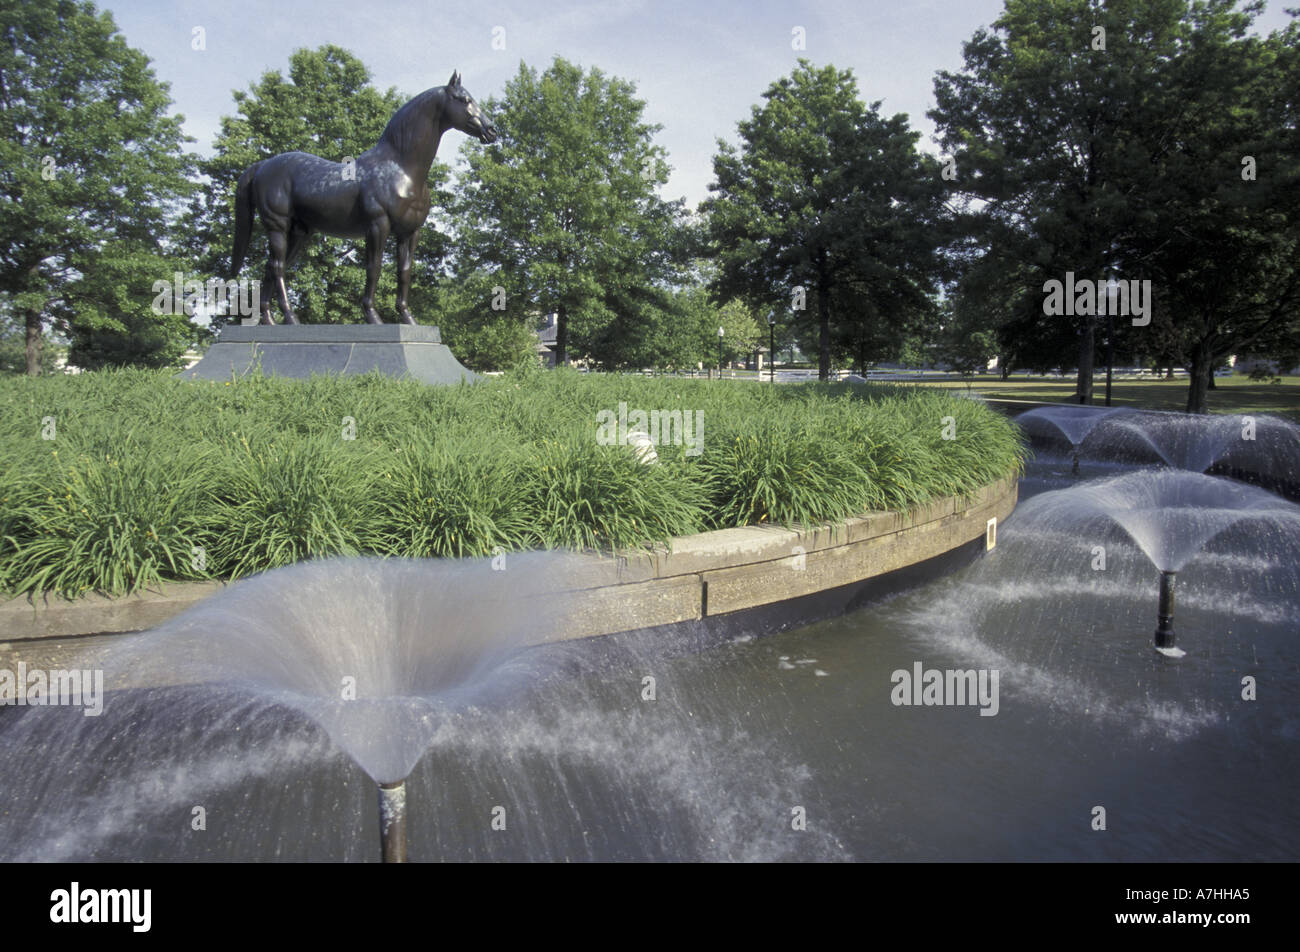 NA, USA, Kentucky, Lexington. Man O War monument, Kentucky Horse Park Stock Photo